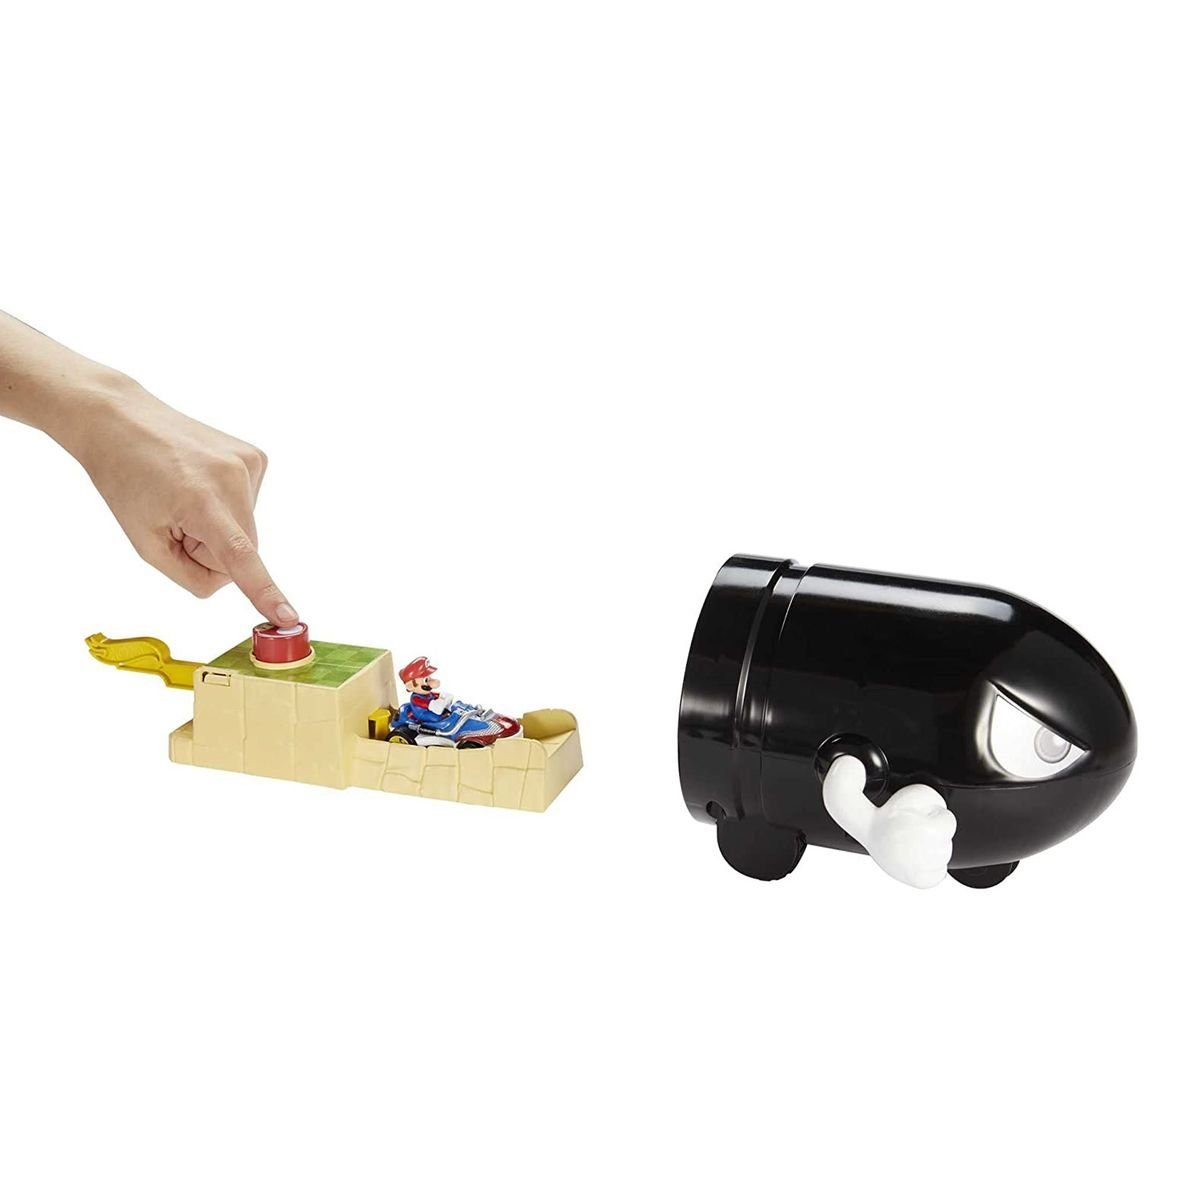 Mattel® Spielzeug-Rennwagen Mattel GBG30 - Hot Wheels - Mario Kart